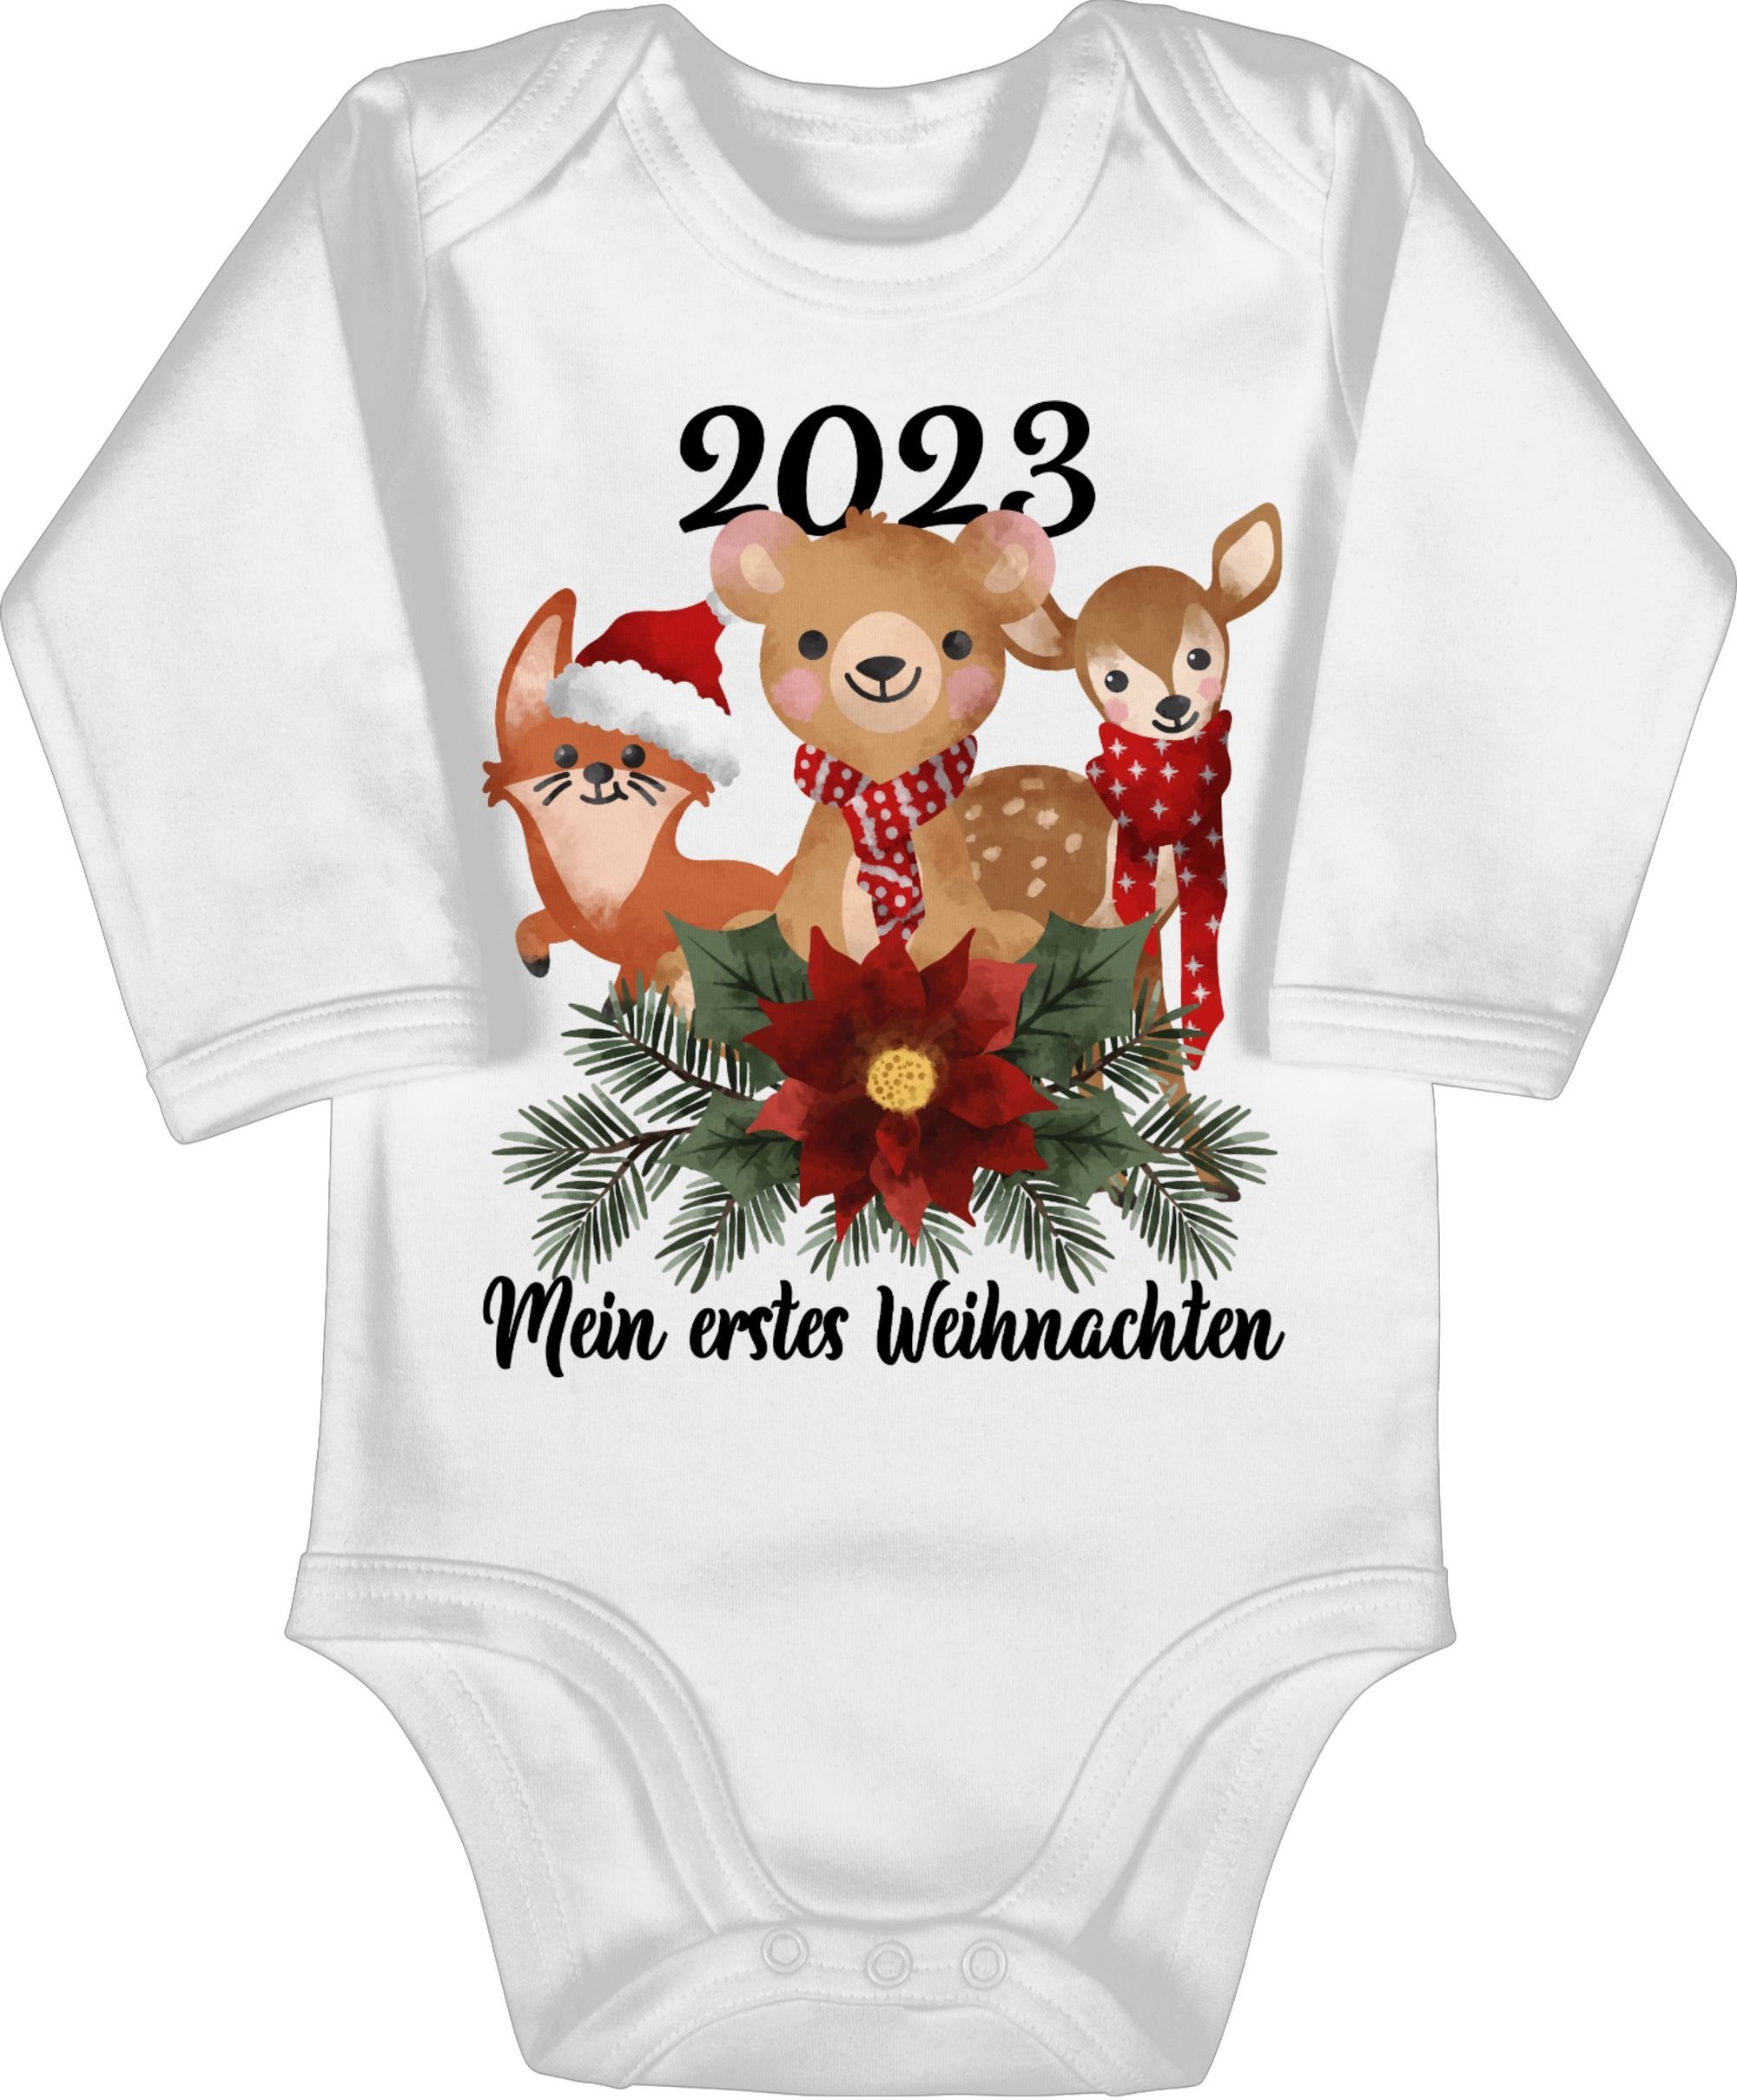 Shirtracer Shirtbody »2023 Mein erstes Weihnachten mit süßen Tieren -  schwarz - Weihnachten Kleidung Baby - Bio Baby Strampler langarm«  langarmbody baby weiß - babybody weiss - erstes weihnachten outfit